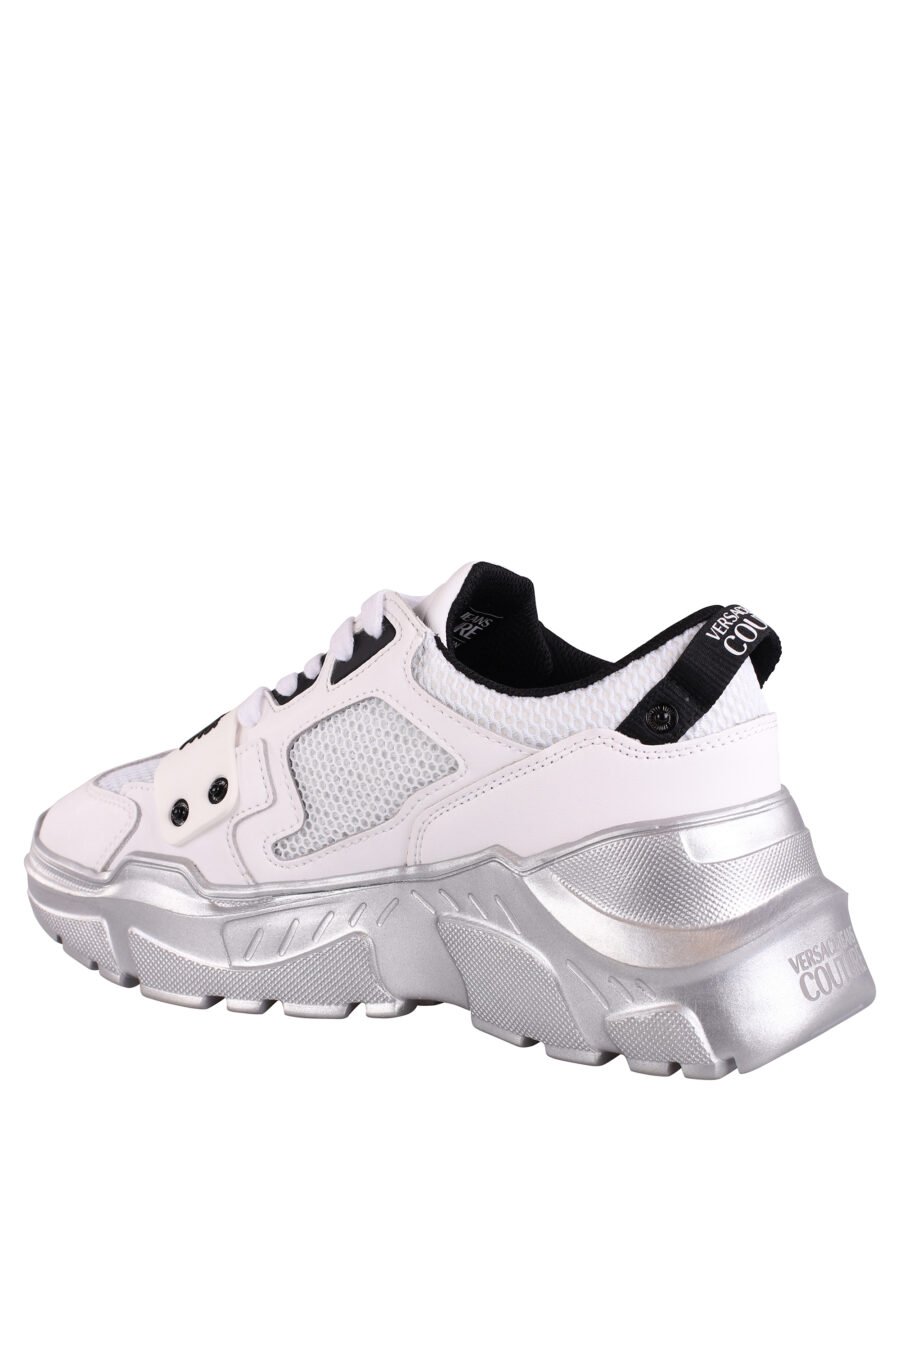 Zapatillas blancas con suela plateada y logo en goma - IMG 9035